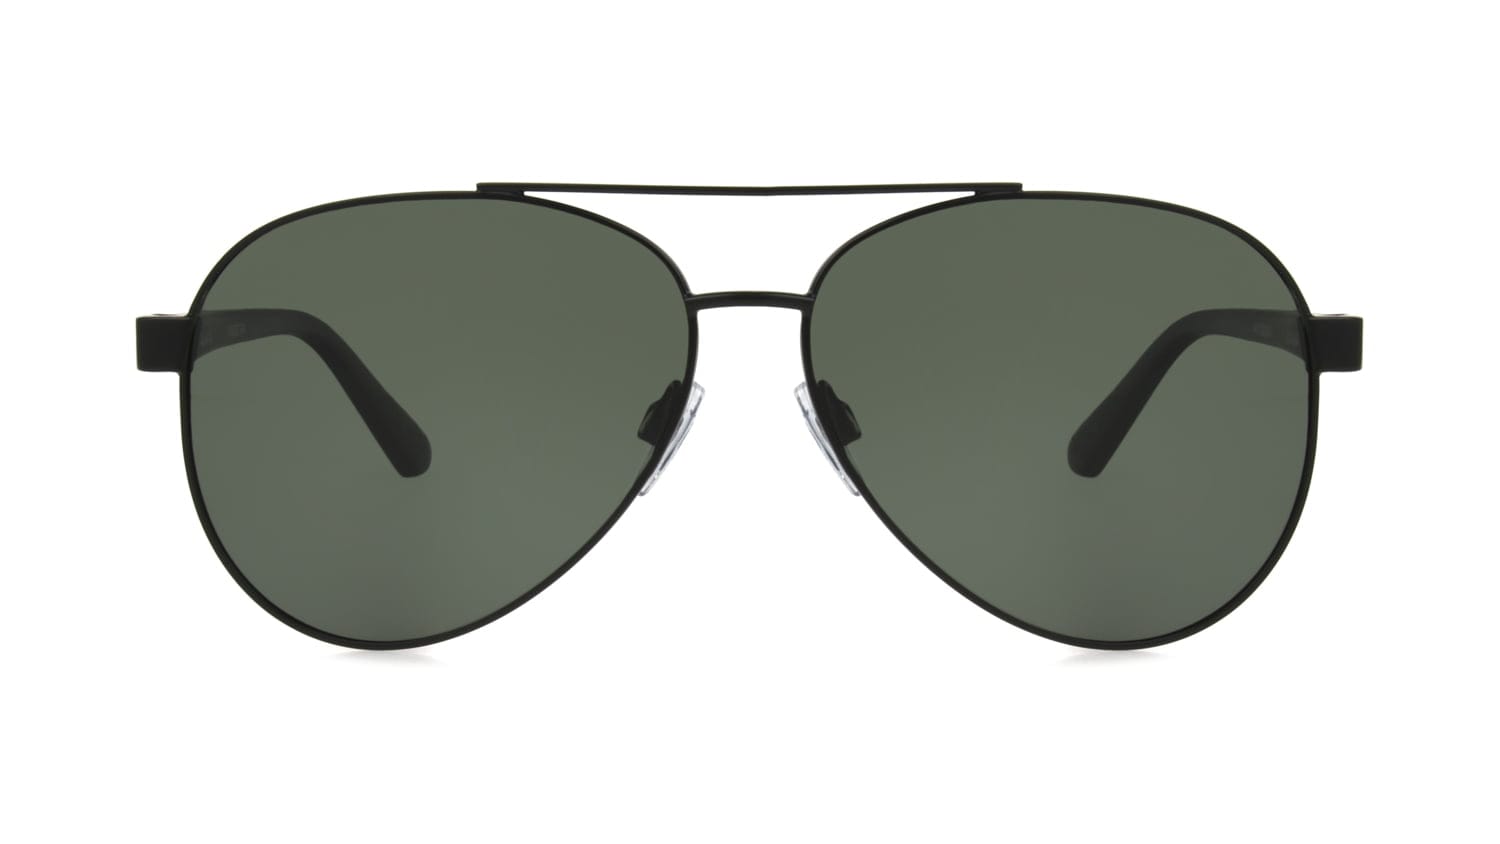 Foster Grant Glass Sunglasses for Men